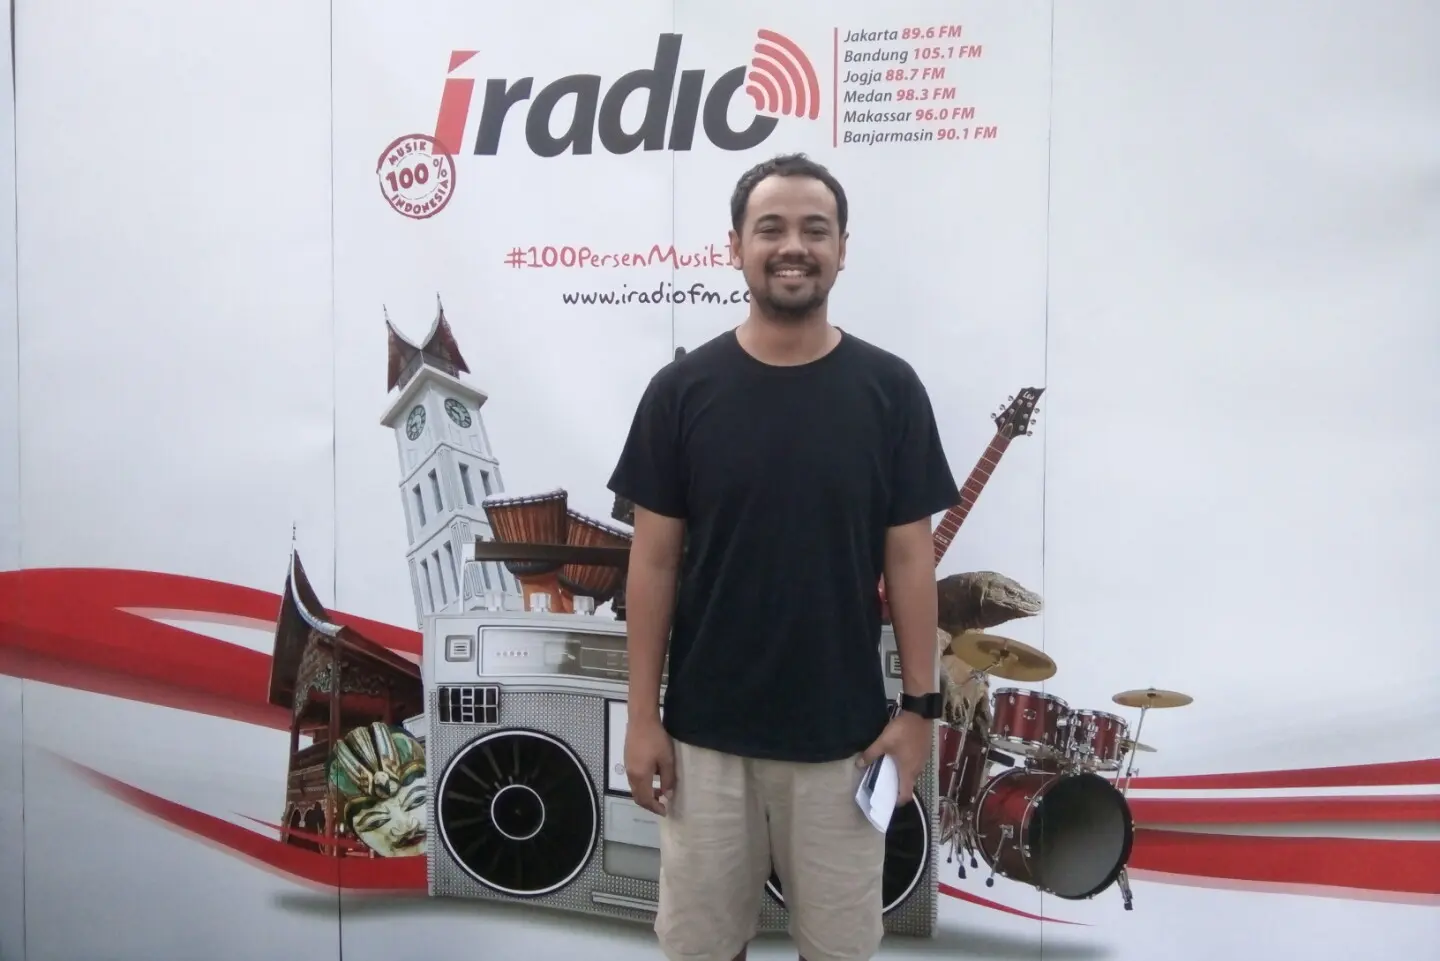 Sementara itu, Program Director i-Radio Jakarta Tyo Prasetyo Utomo menjelaskan bahwa i-Radio Sapu Bersih adalah acara yang telah rutin digelar 3 bulan sekali sejak 2016